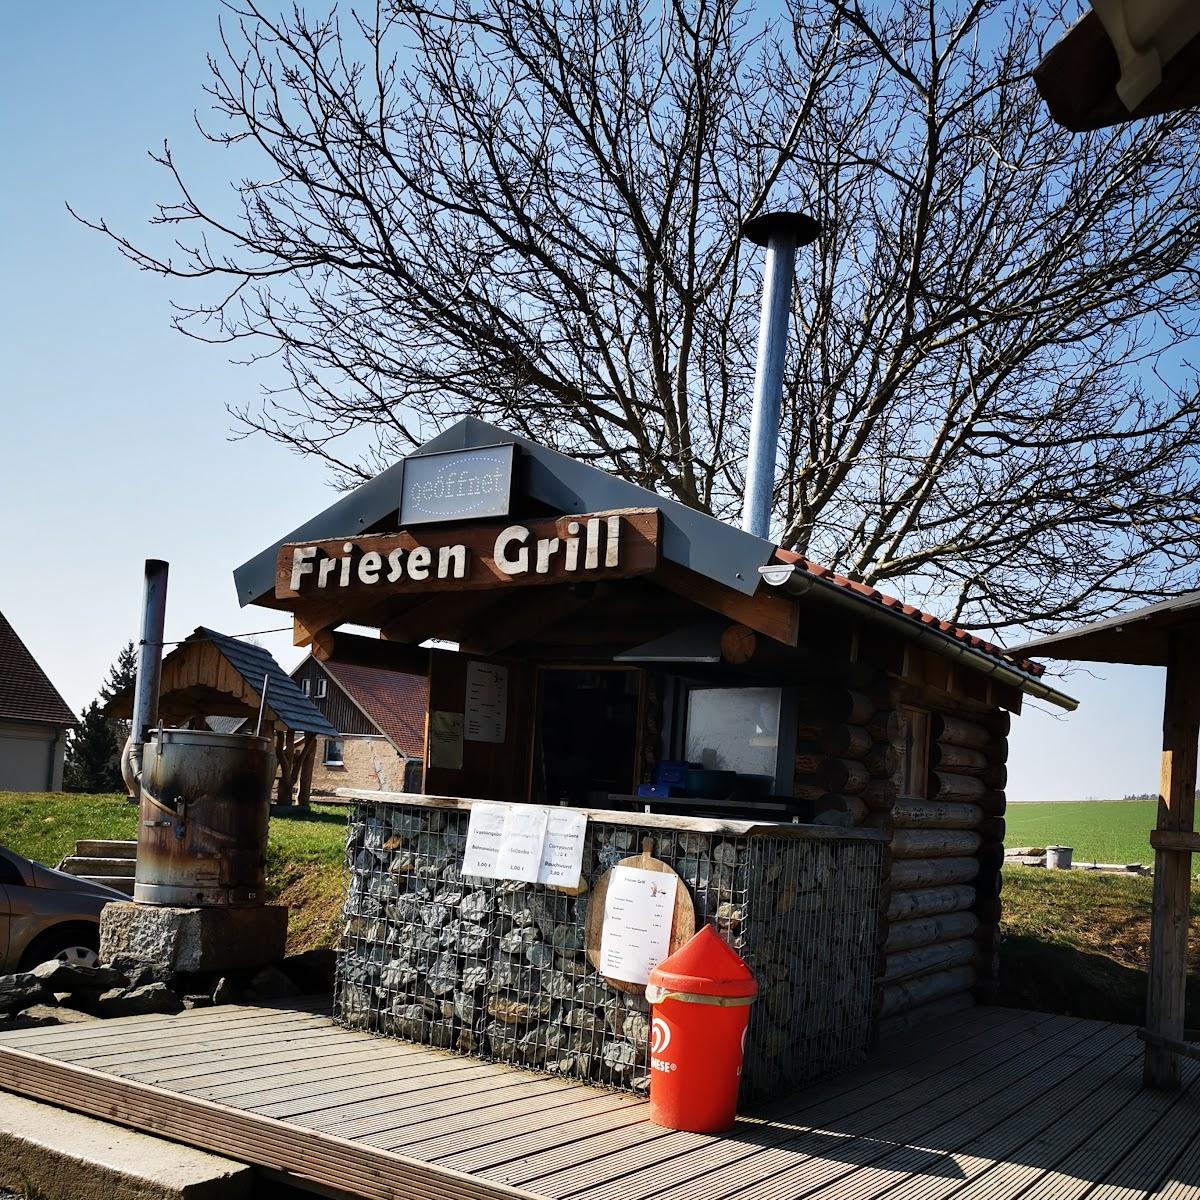 Restaurant "Friesen Grill" in Reichenbach im Vogtland